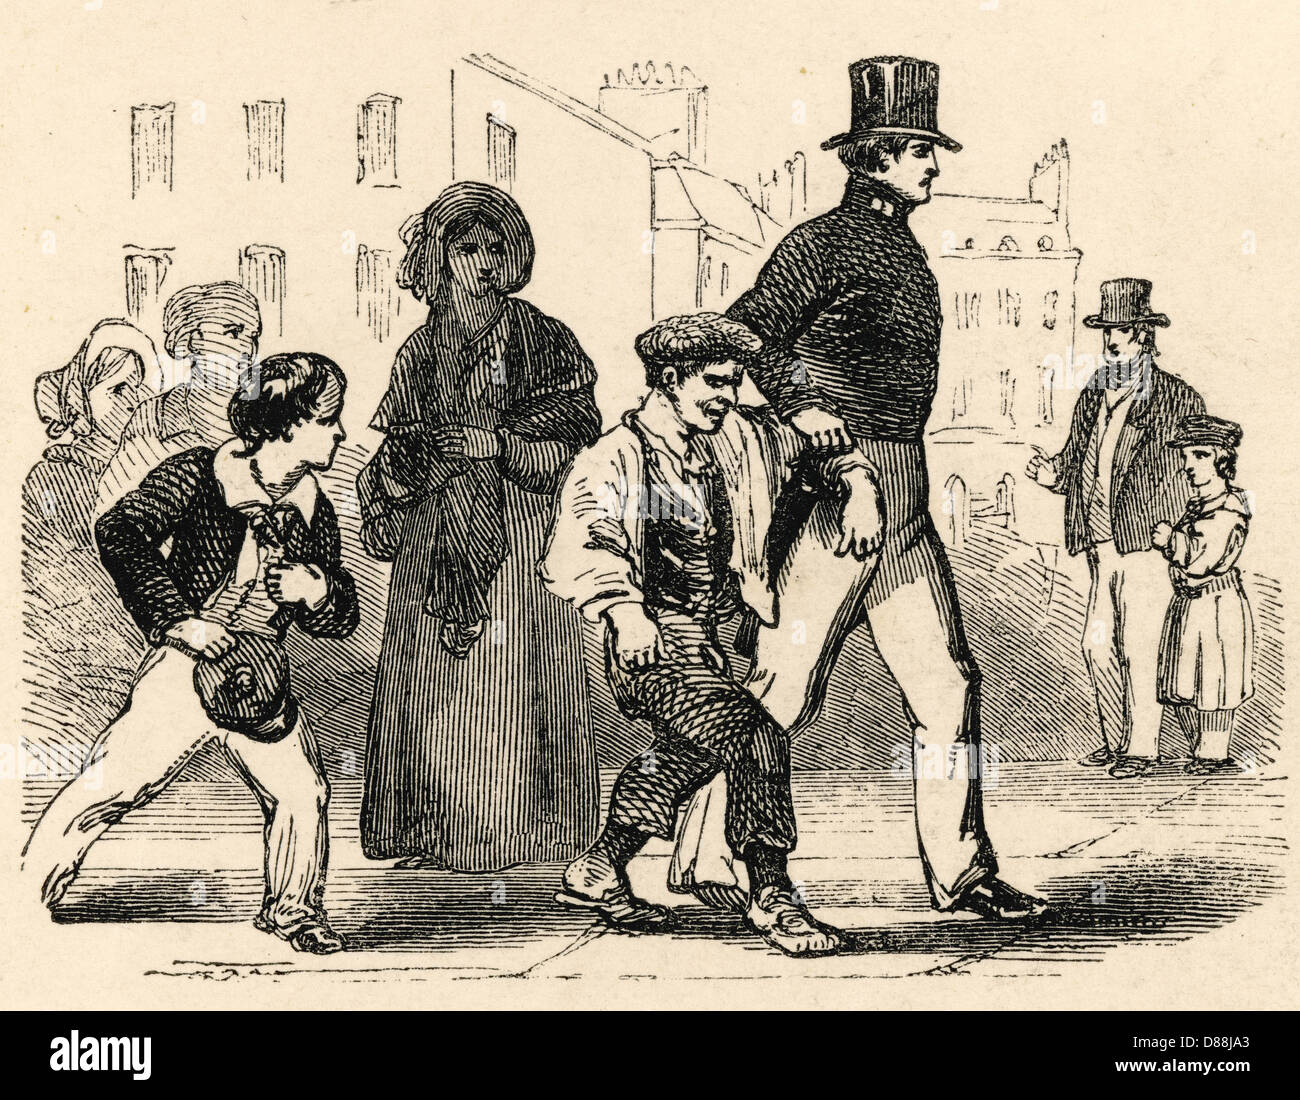 Crime - Juveniles - 1840 Stock Photo